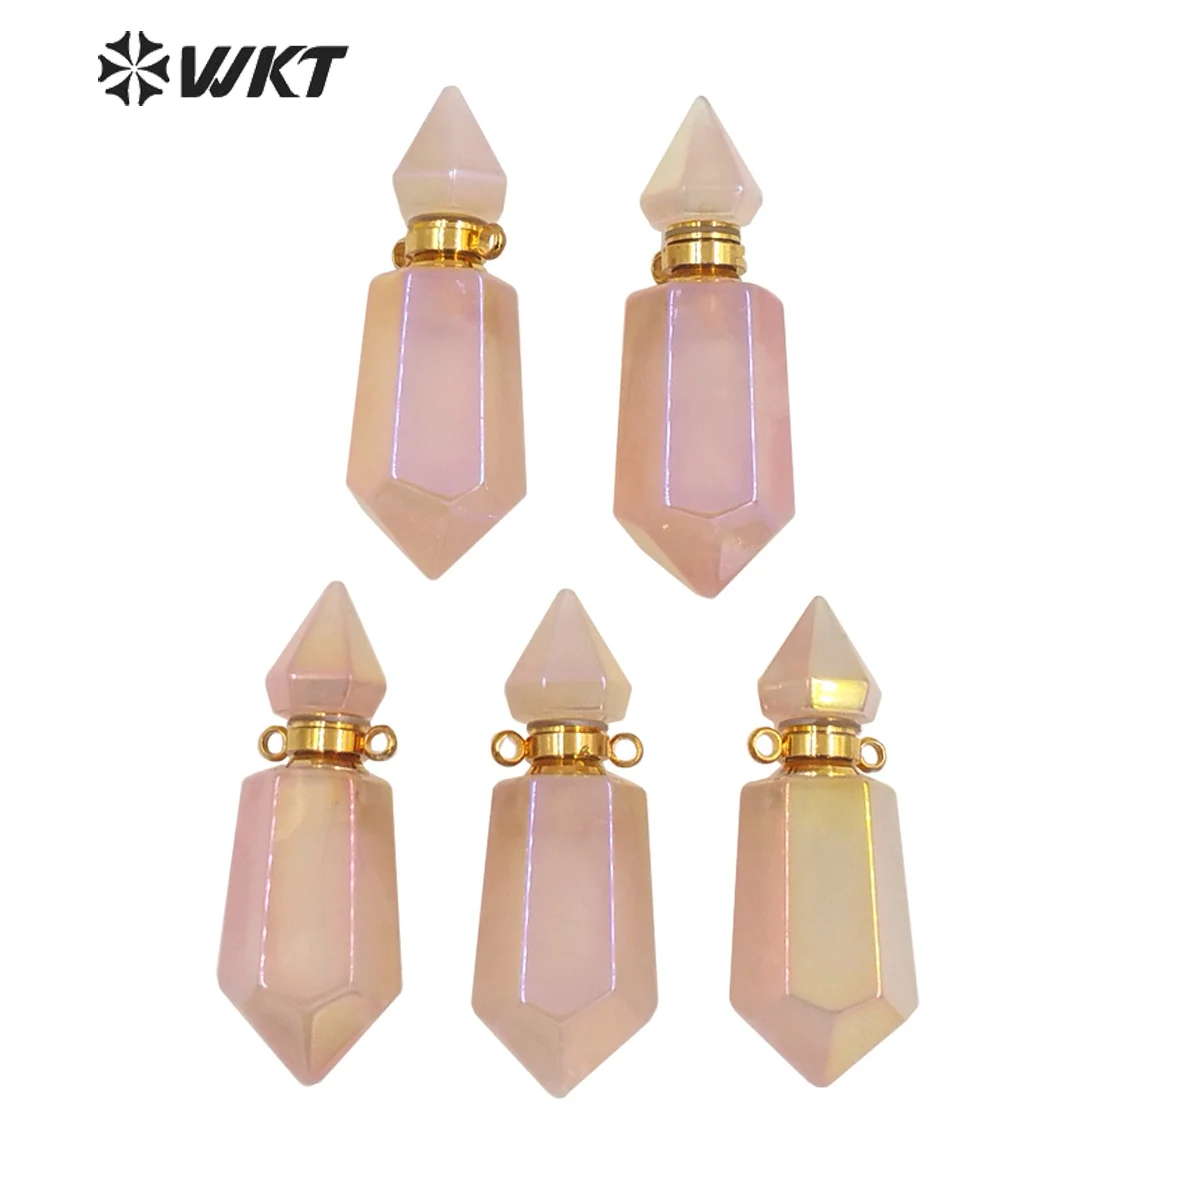 

WT-P1650 Gorgeous fashion double point pink stone perfume bottle pendant high flash spirit quartz Essencial oil necklace pendant